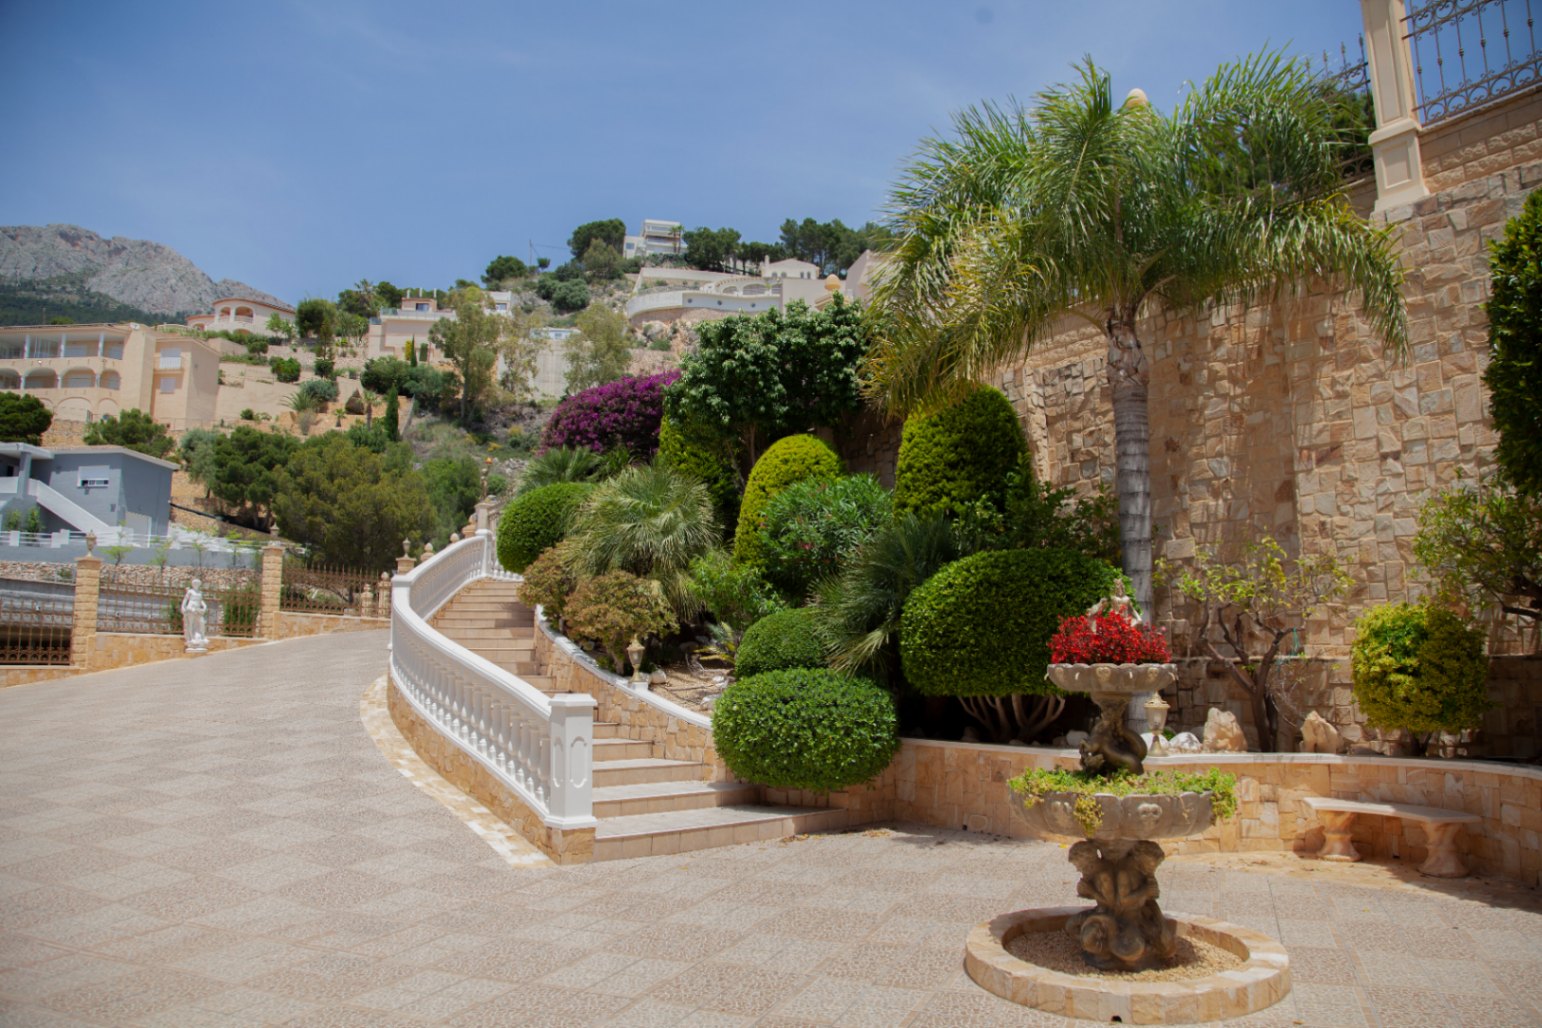 A vendre un complexe exquis composé de deux majestueuses villas dans la ville pittoresque d'Altea, une oasis de tranquillité sur la resplendissante Costa Blanca, à seulement 60 km de l'aéroport d'Alicante.